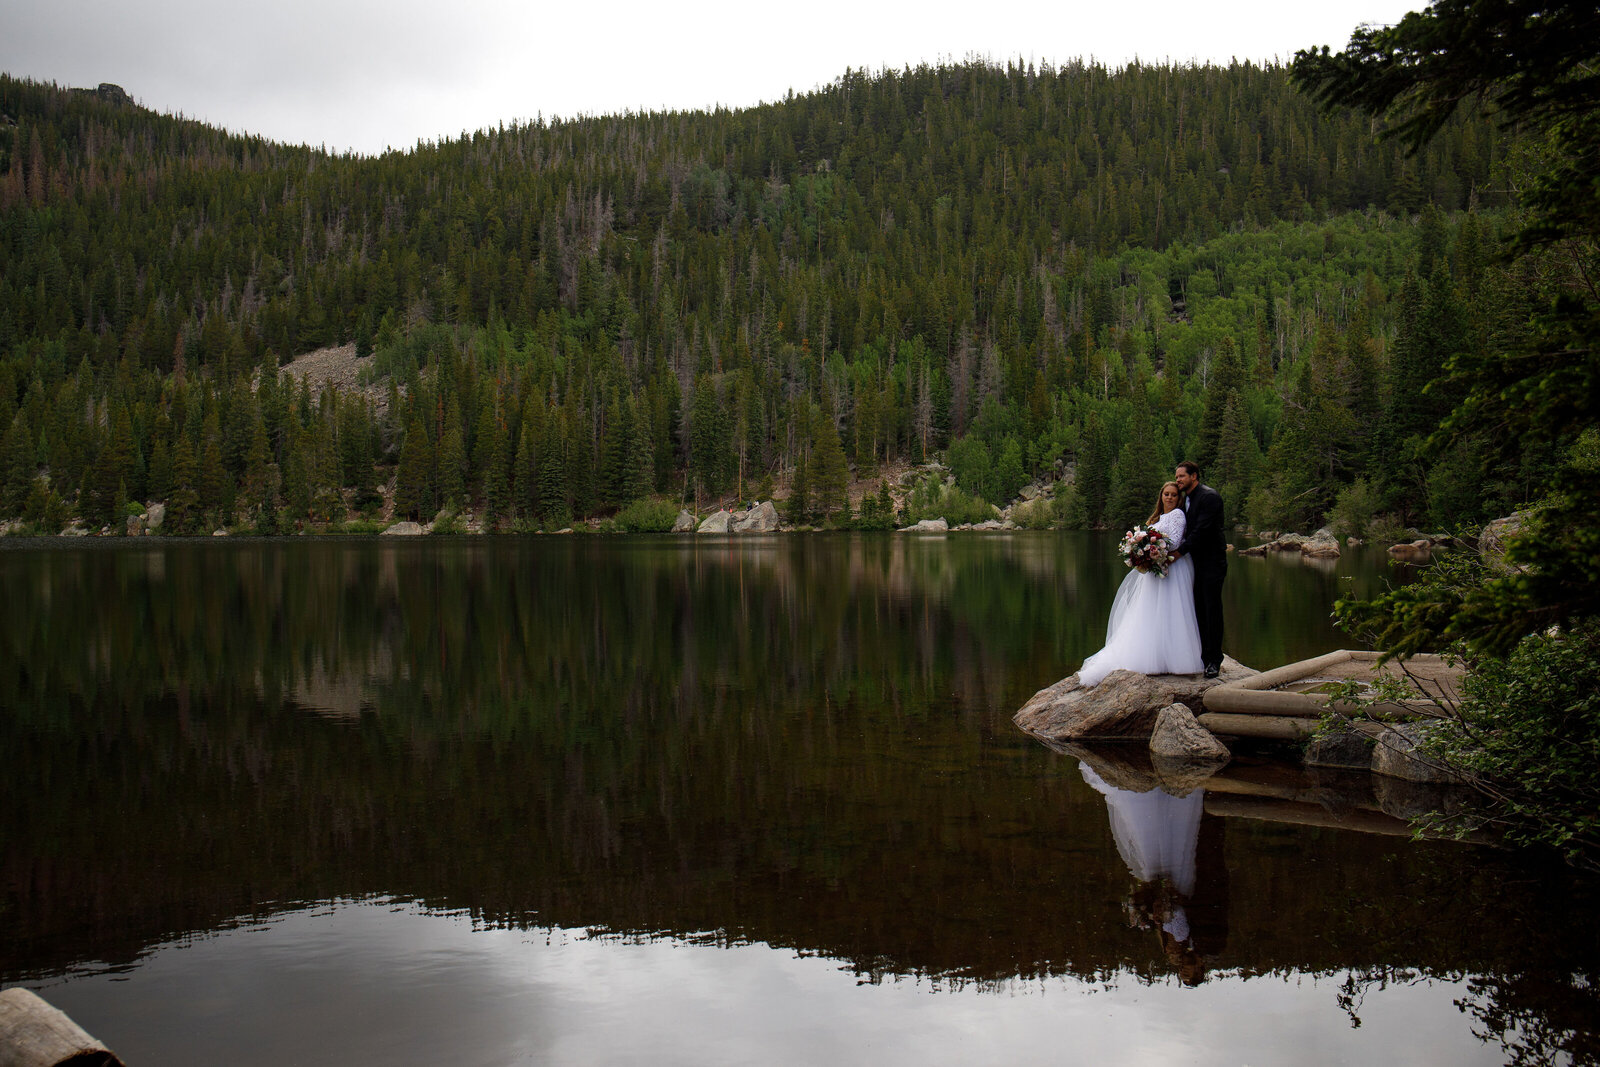 Estes Park Colorado RMNP Rocky Mountain National Park elopement wedding photography at Bear Lake